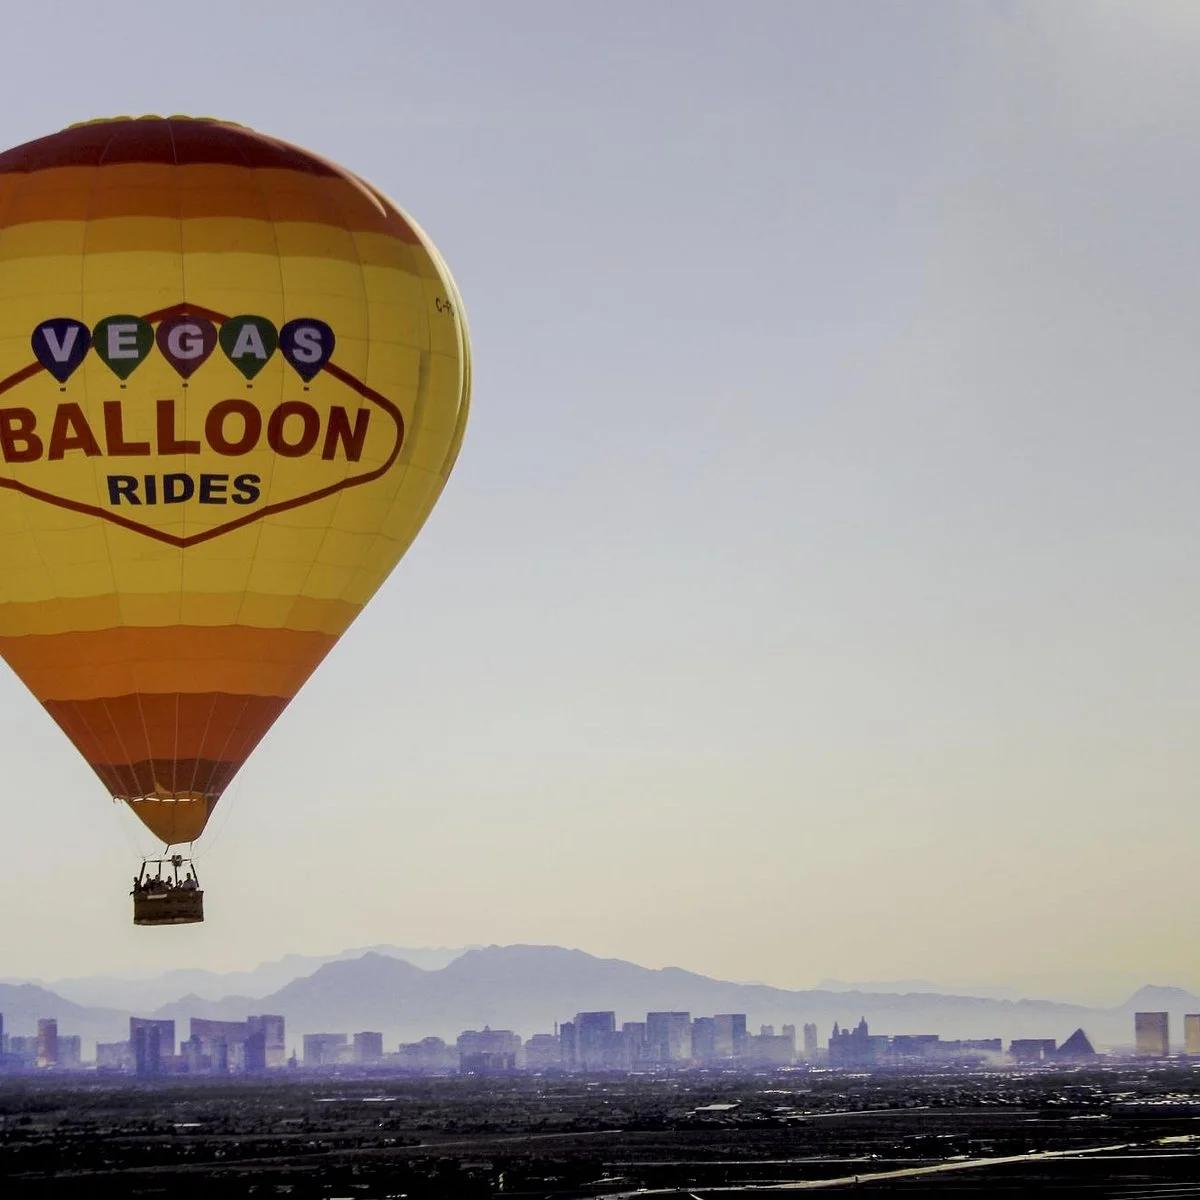 Hot Air Balloon in Las Vegas